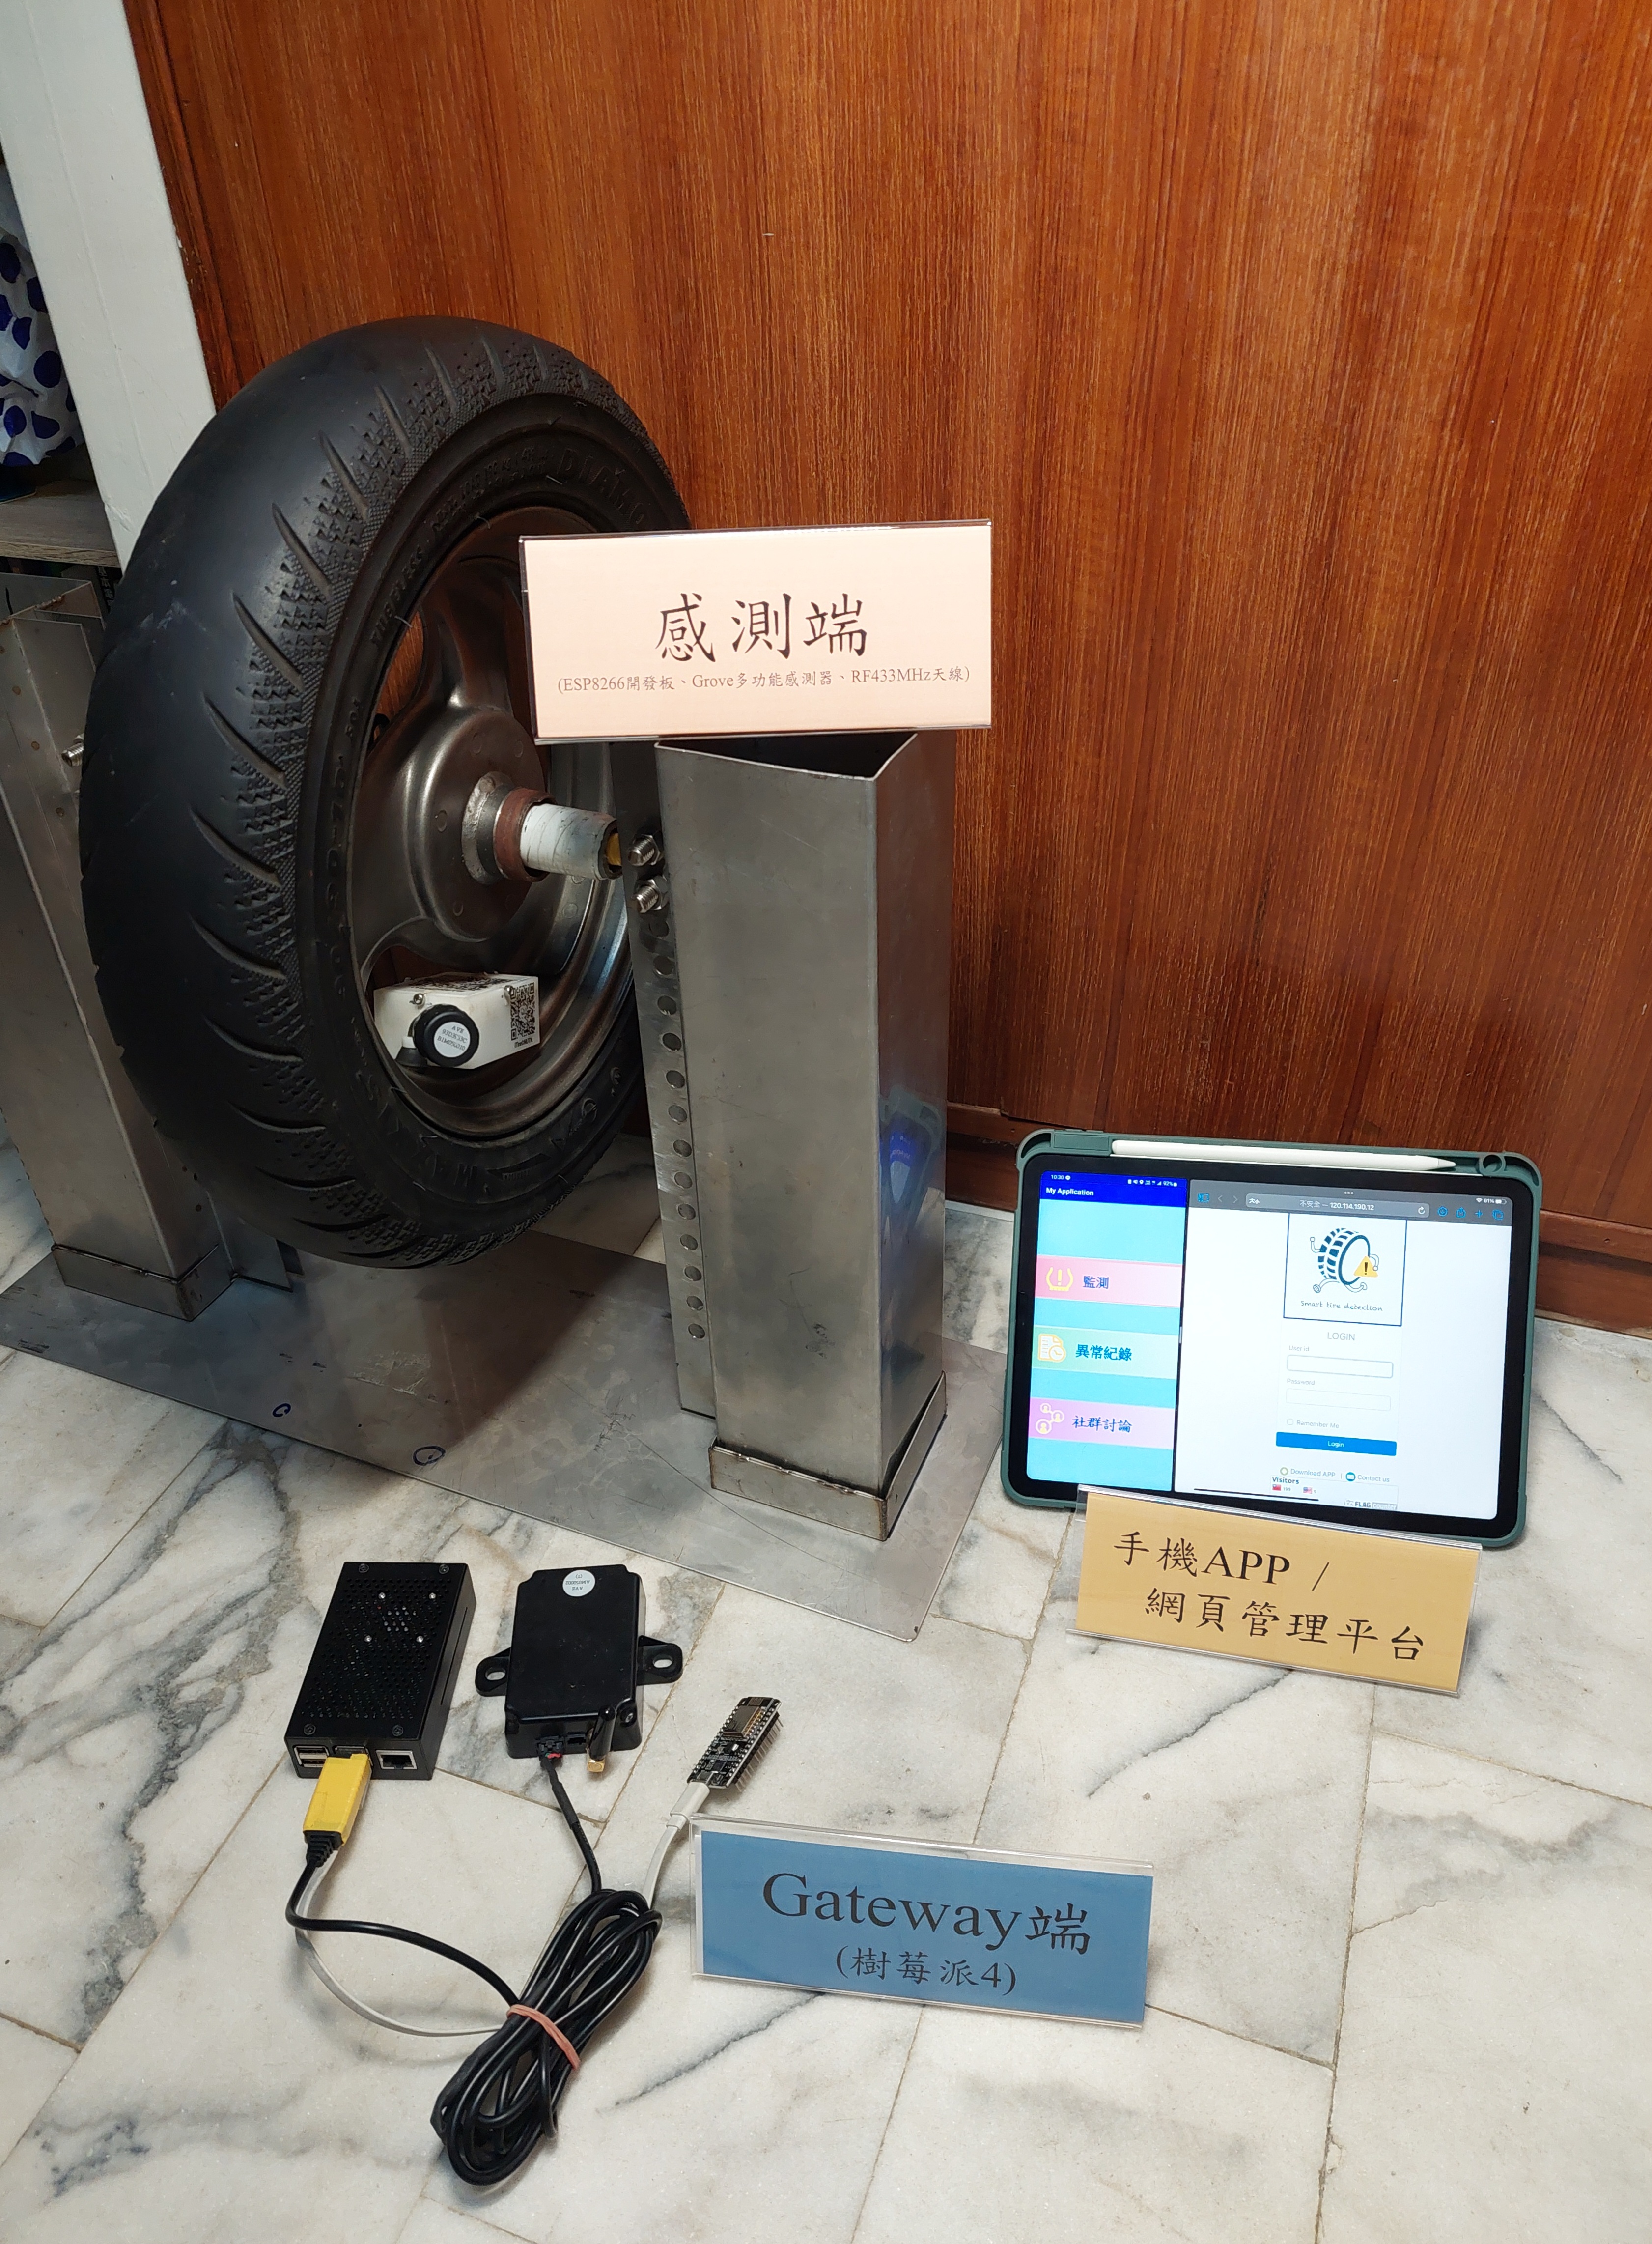 行車安全輪輪有責–基於Esp8266物聯網裝置及DNN深度學習之智慧輪胎檢測系統